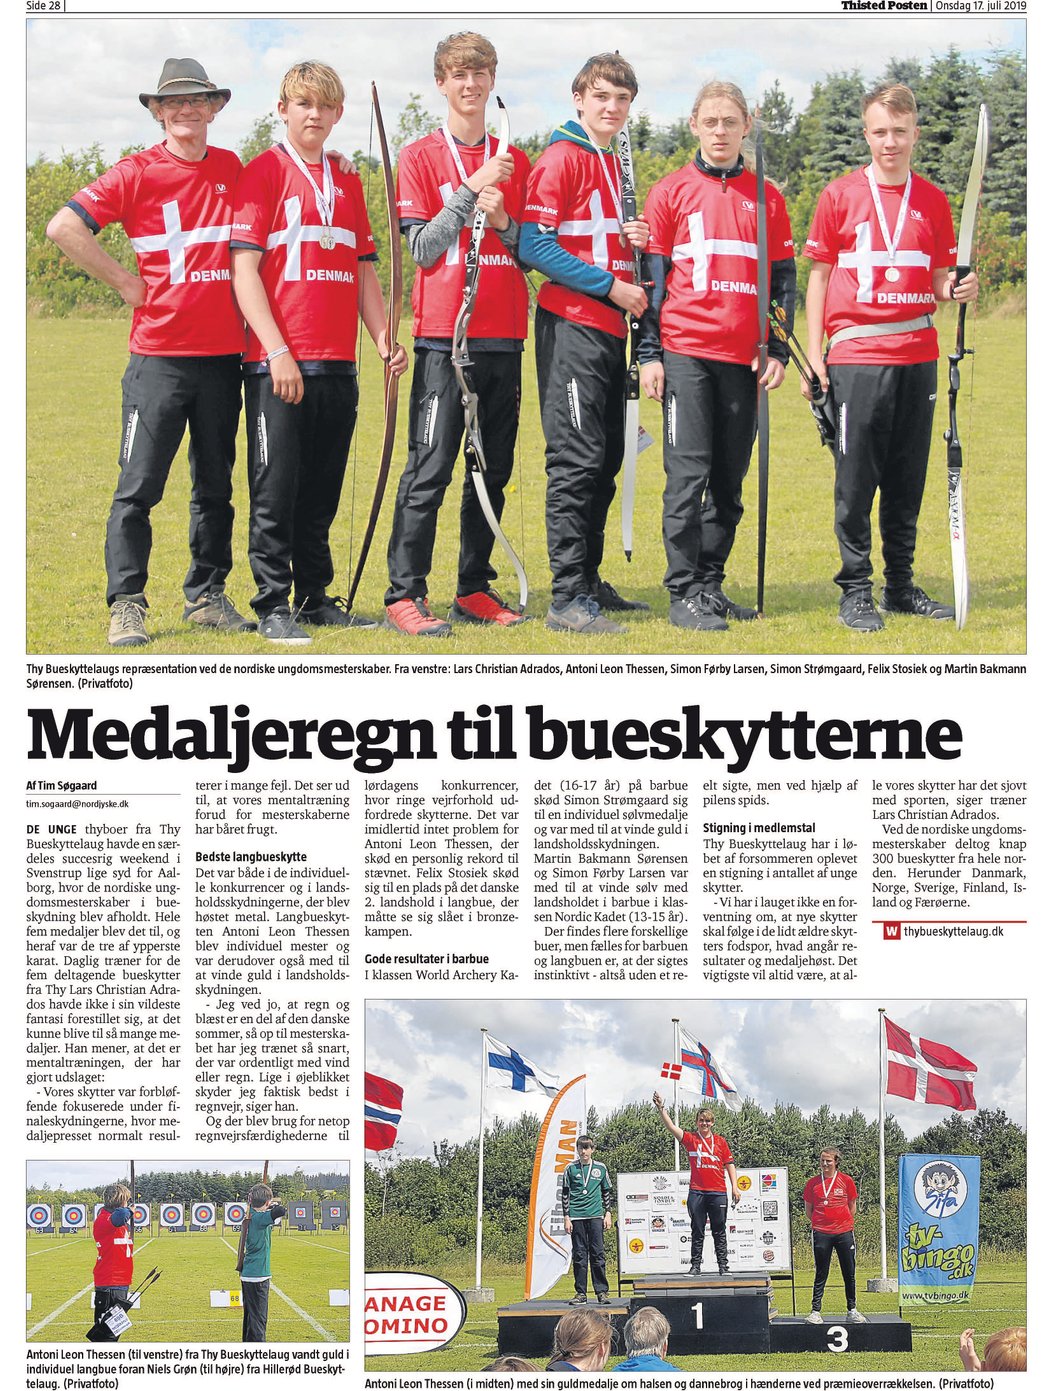 Medaljeregn til bueskytterne fra Thy Bueskyttelaug – Thisted Posten d. 17/7-2019